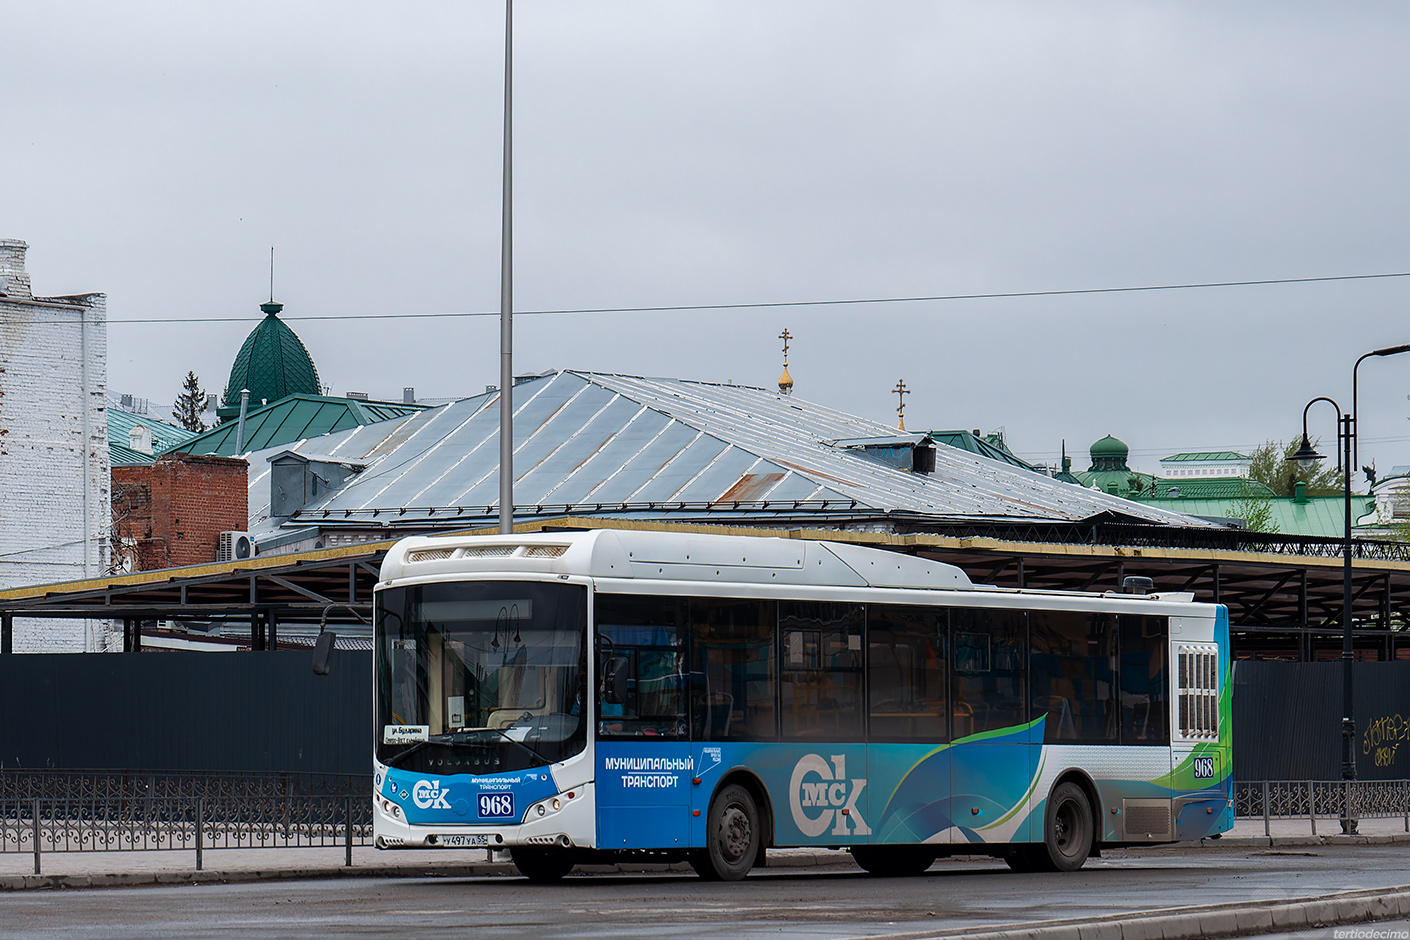 Omsk region, Volgabus-5270.G2 (CNG) # 968